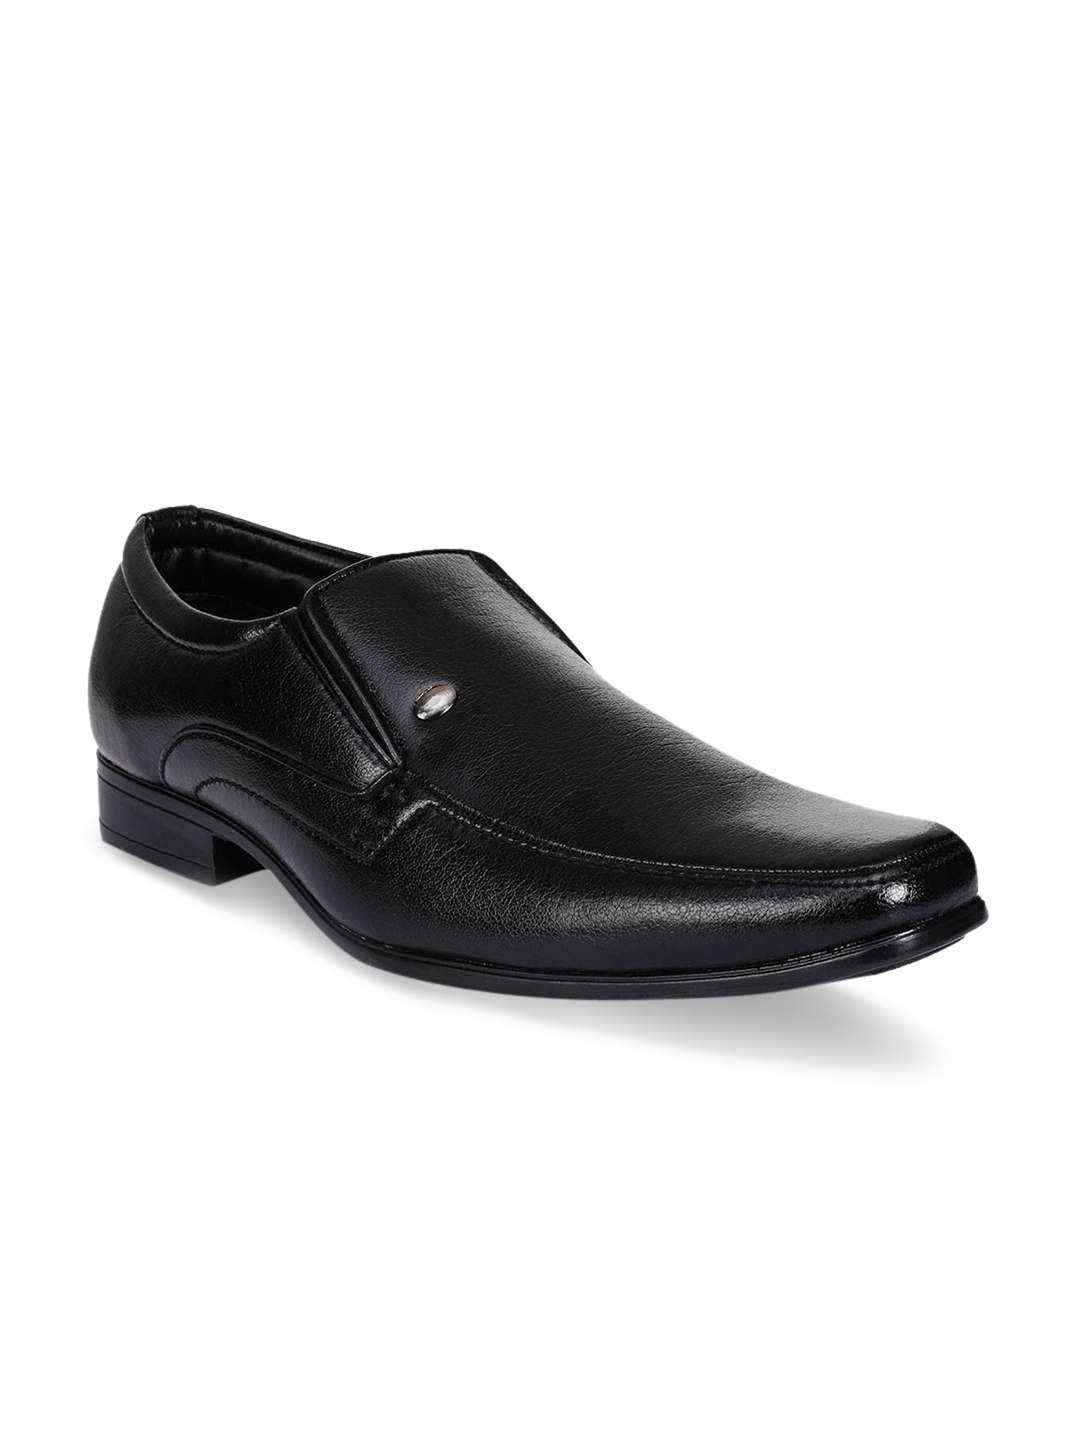 Buy Action Men Black Semi Formal Shoes - Formal Shoes for Men 2511209 ...